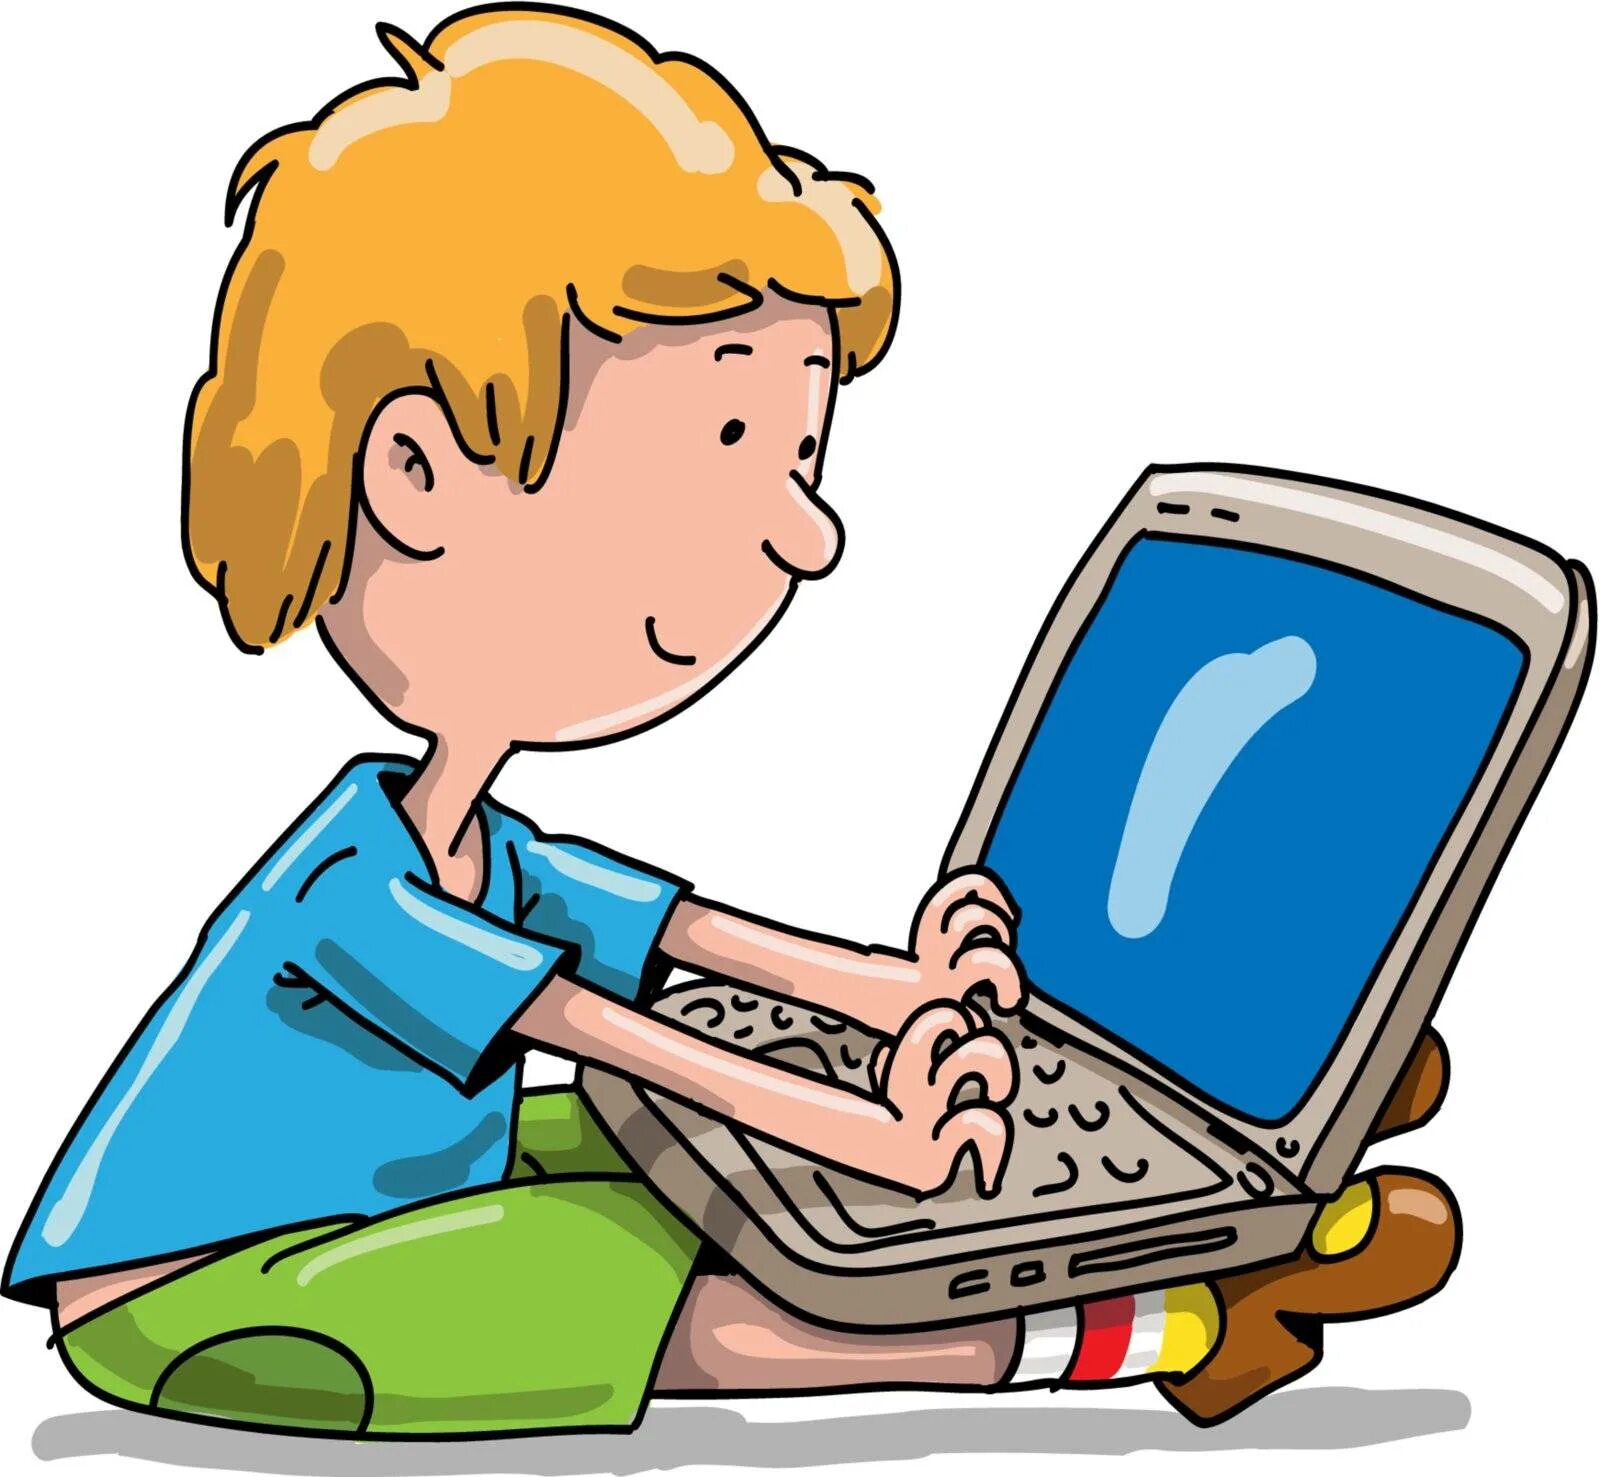 Детский интернет дома. Компьютер для детей. Компьютер иллюстрация. Компьютер для школьника. Ребенок за компьютером.